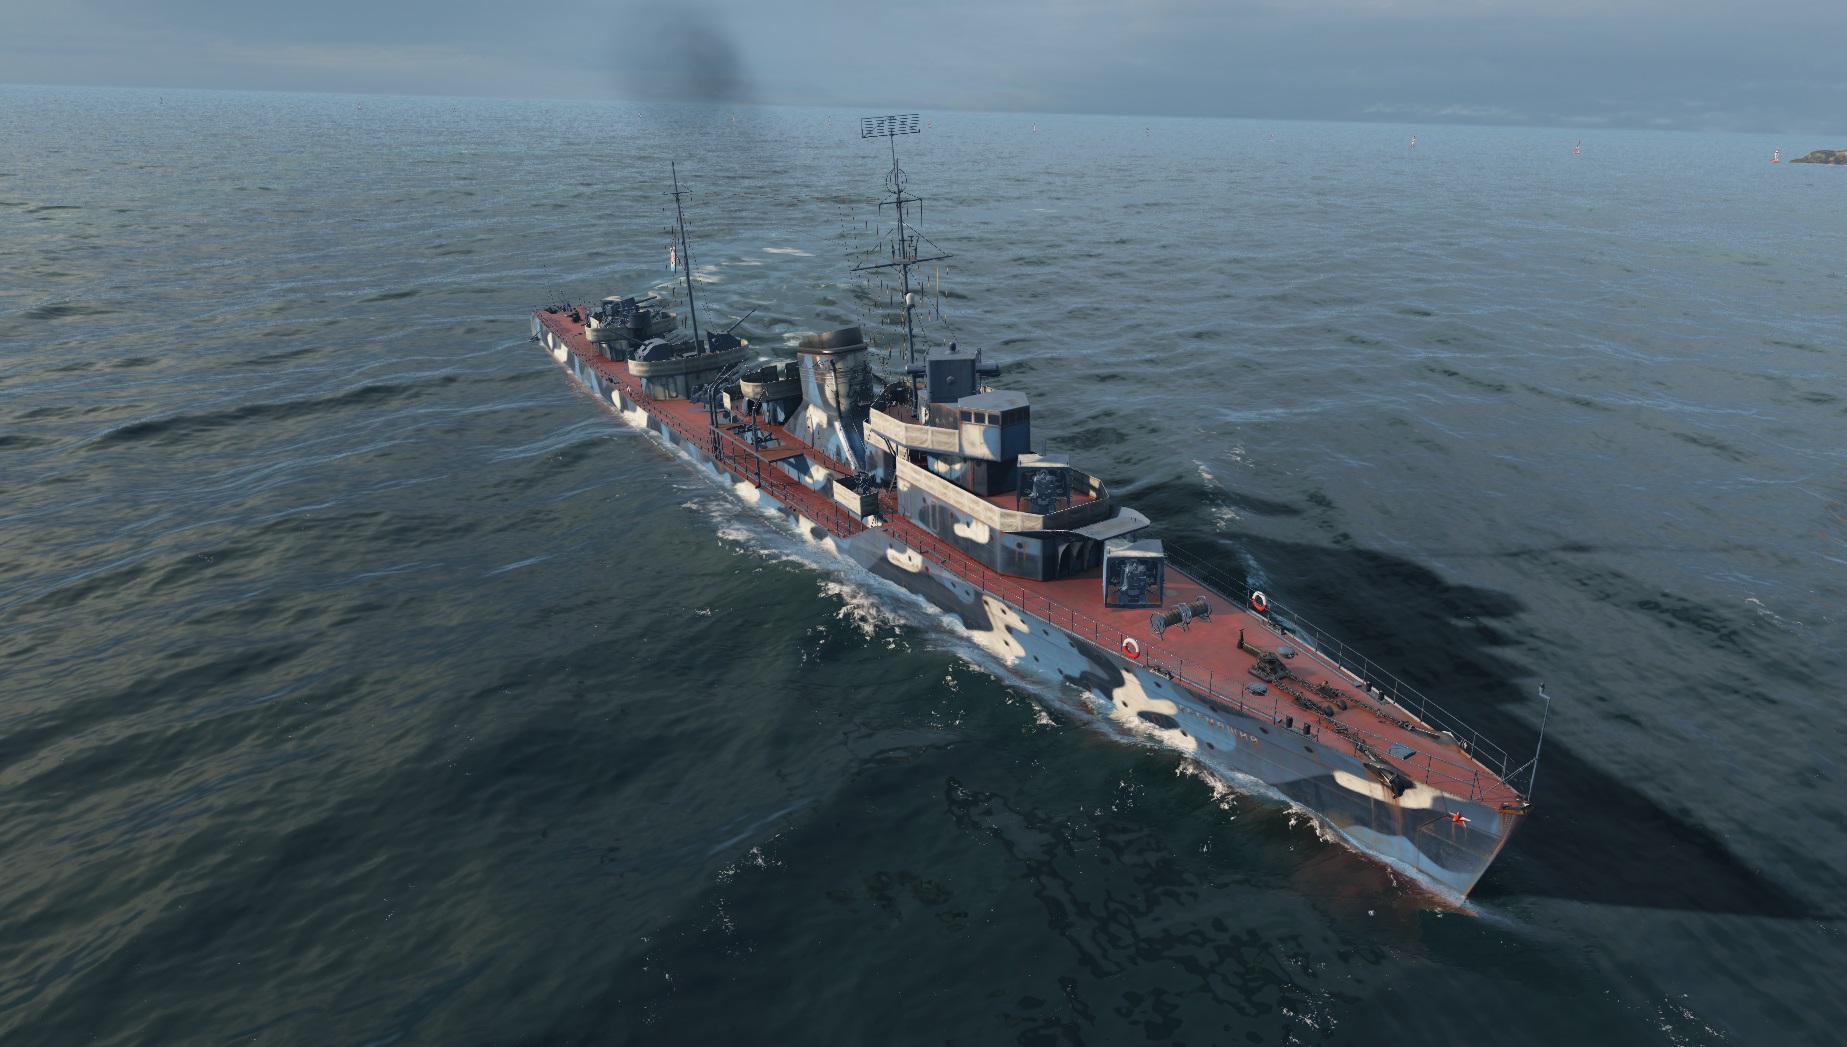 world of warships camouflage mod